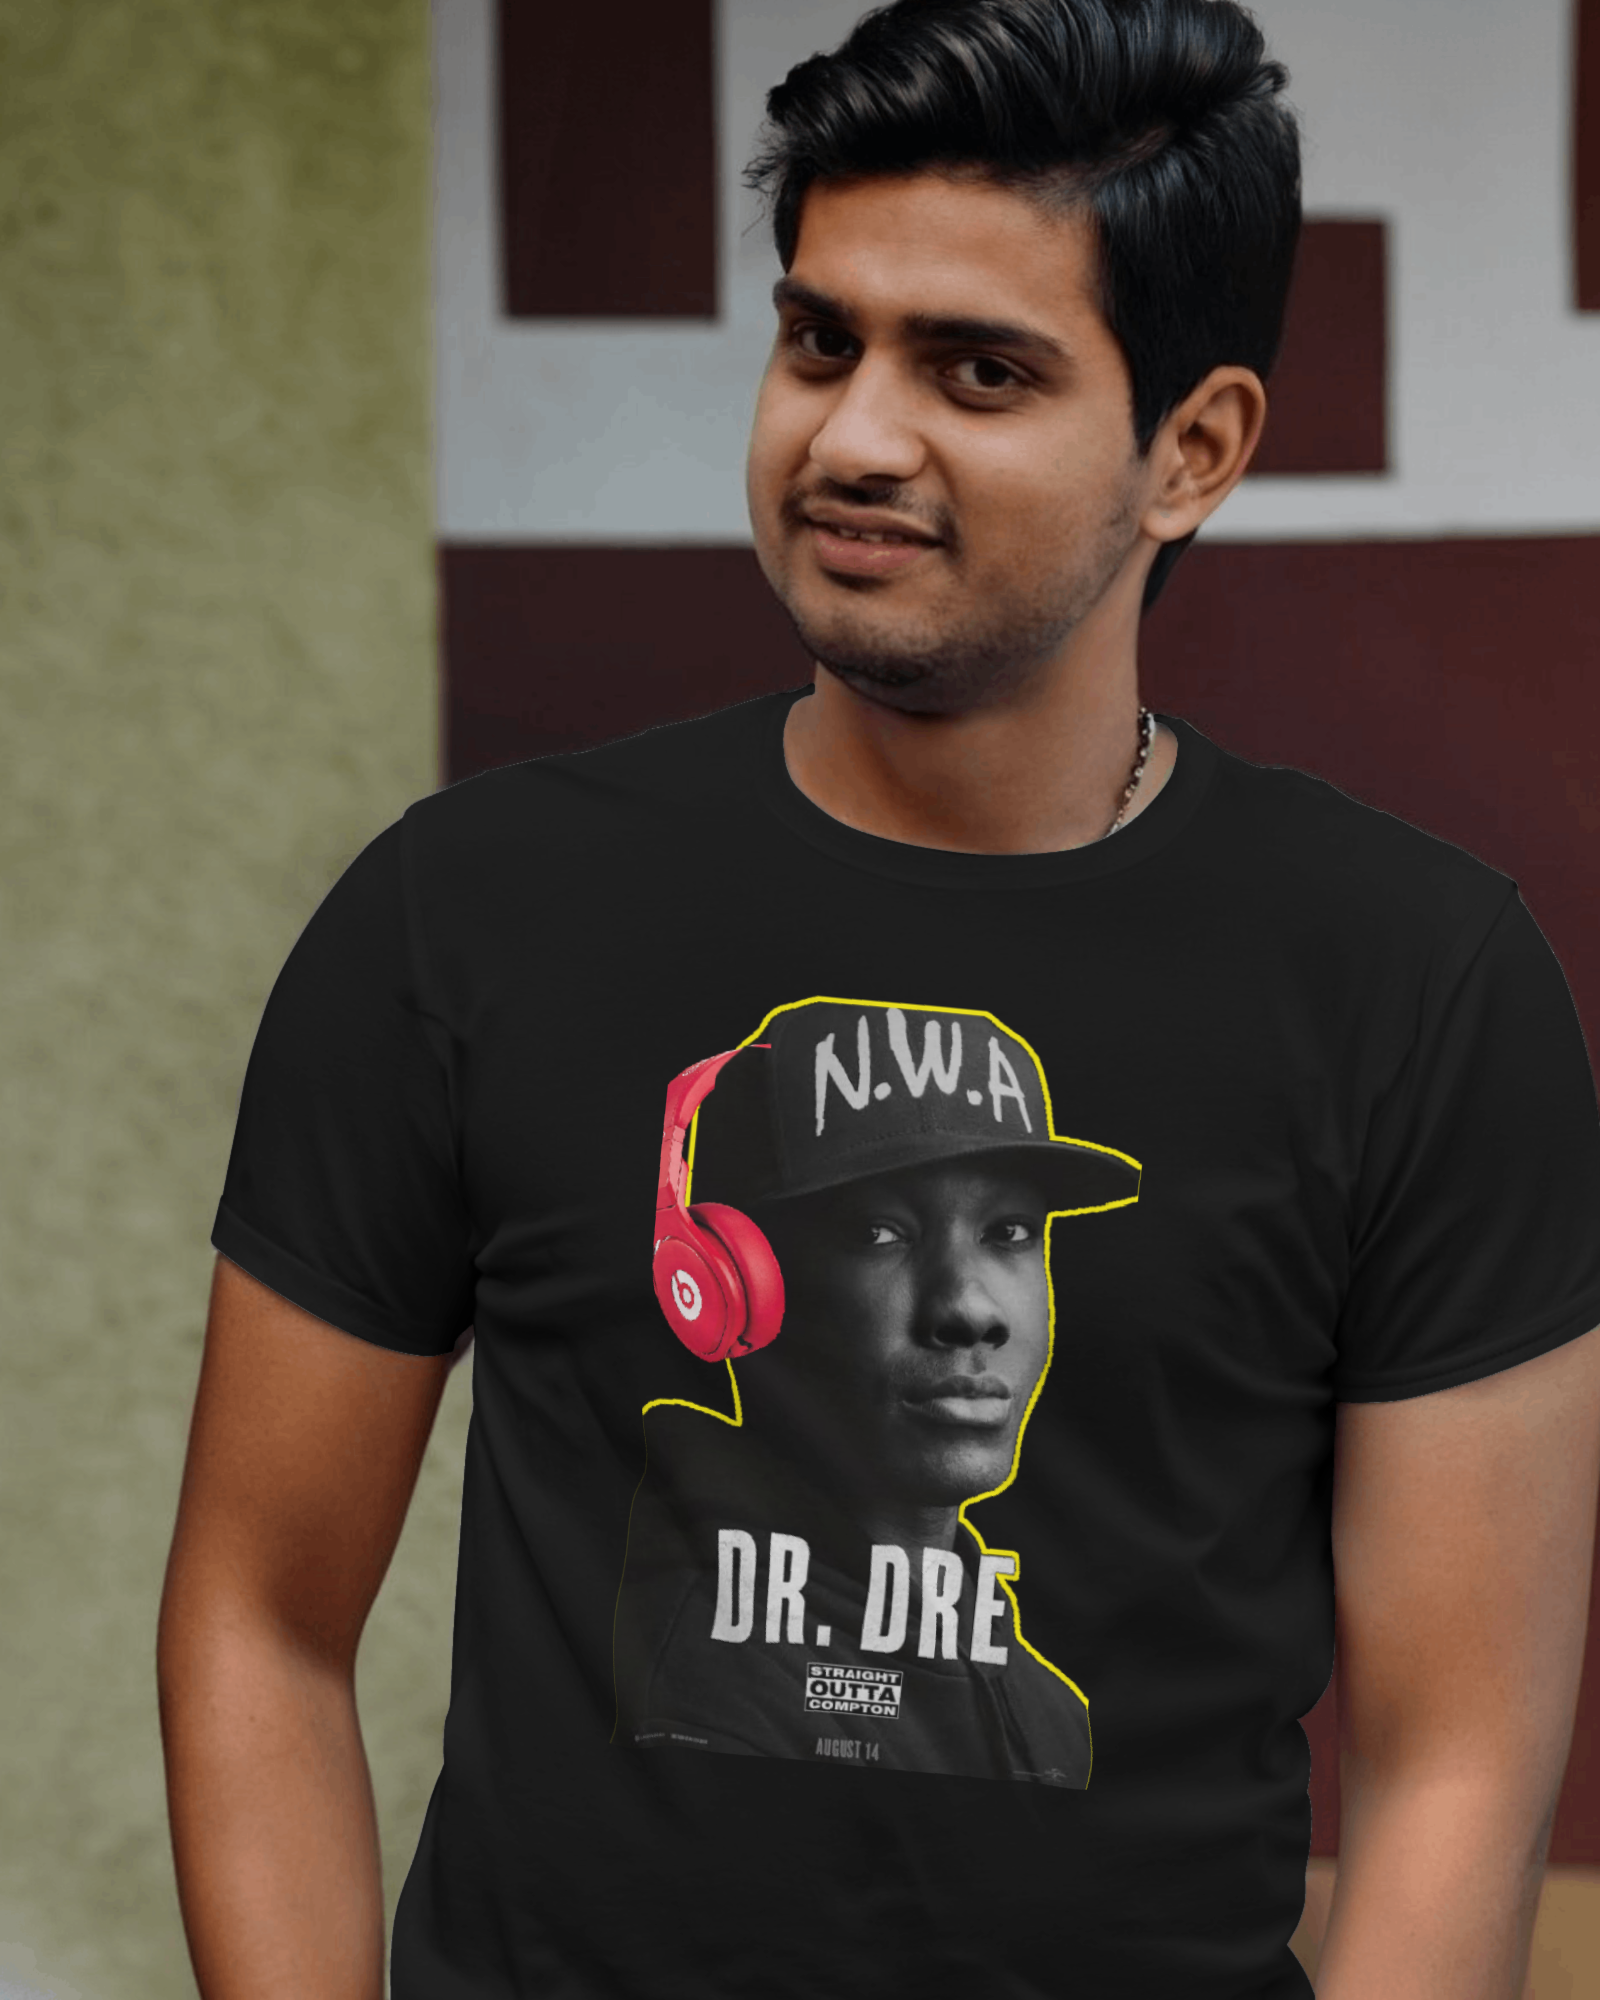 #drdre Printed Tshirt